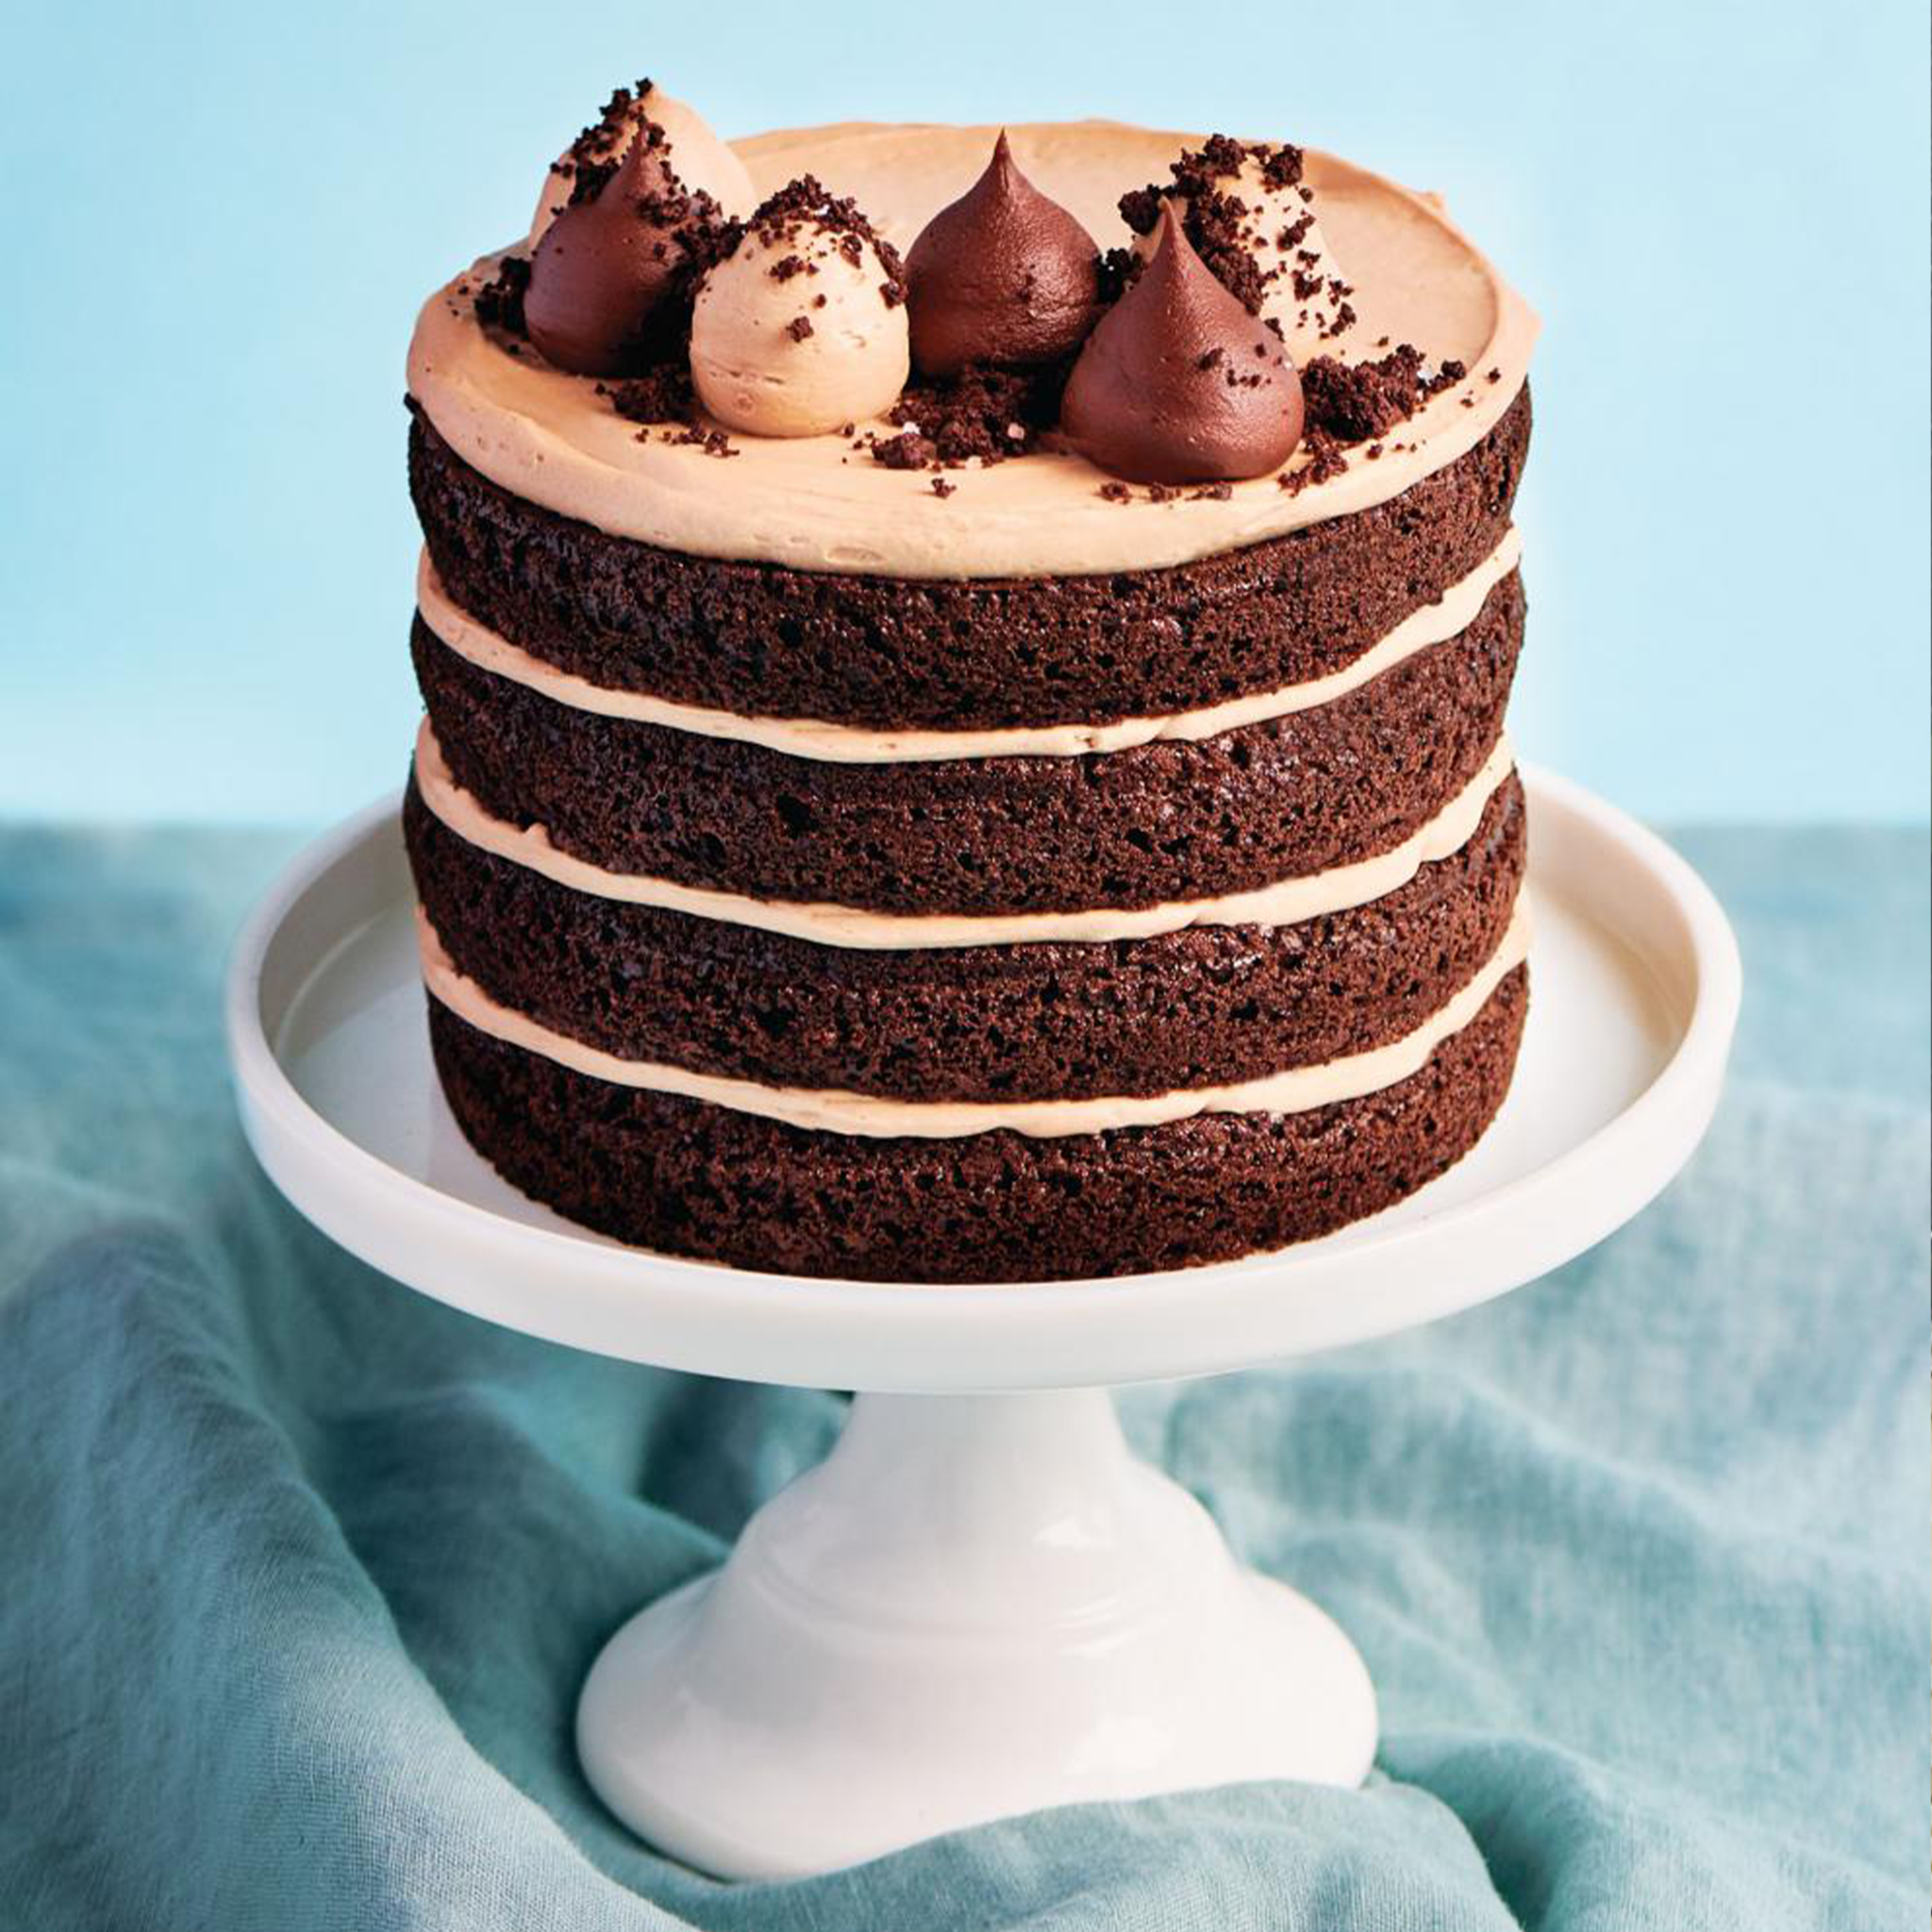 Recette de Gâteau au Chocolat Ricardo : Un Pur Délice pour les Amateurs de Chocolat